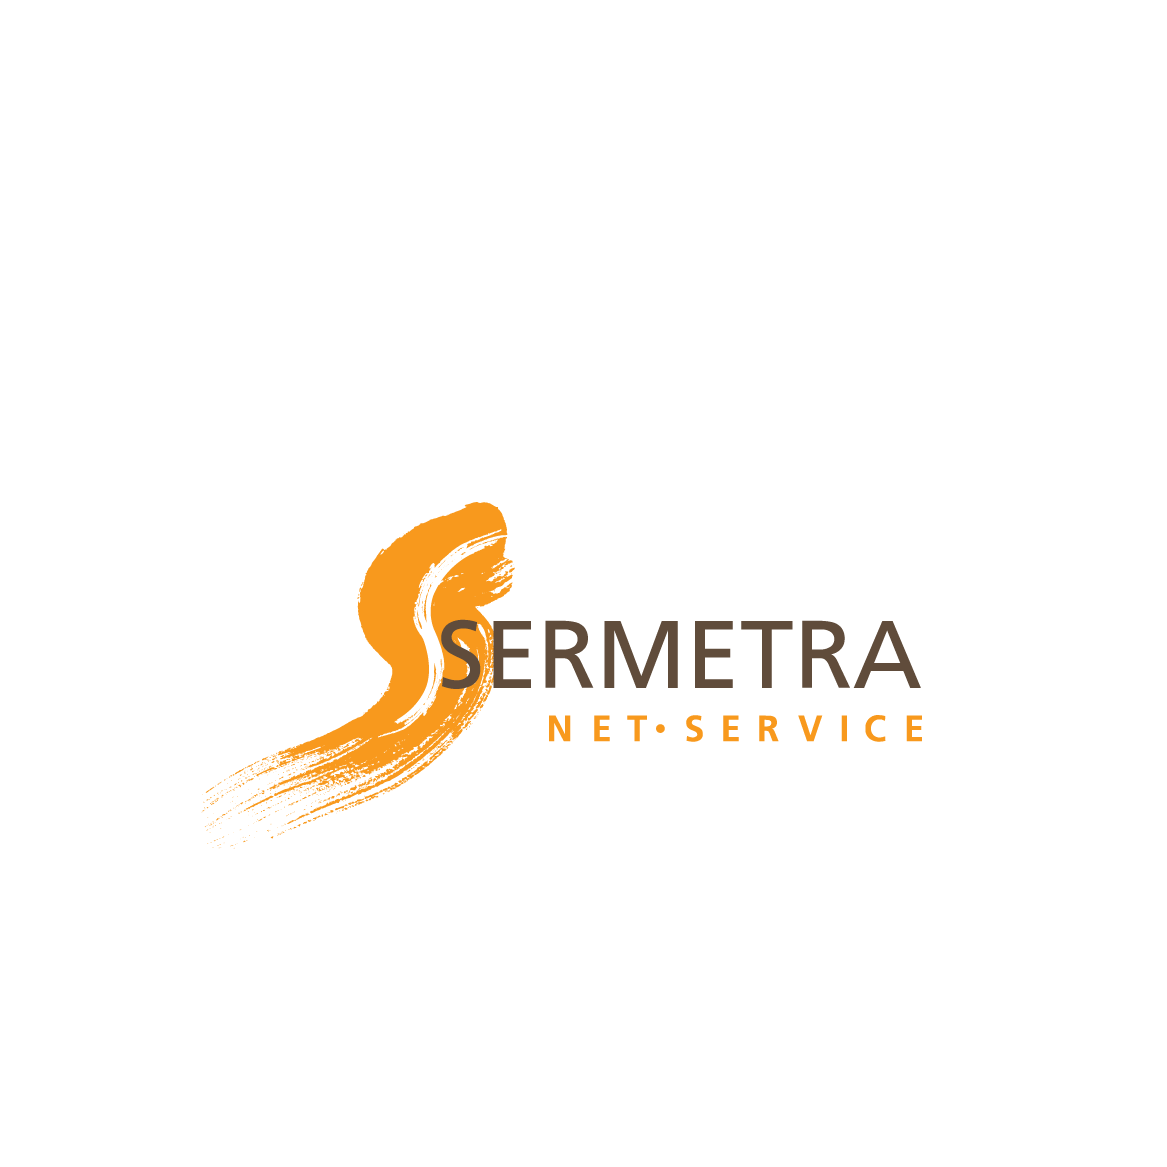 Sermetra Net Service